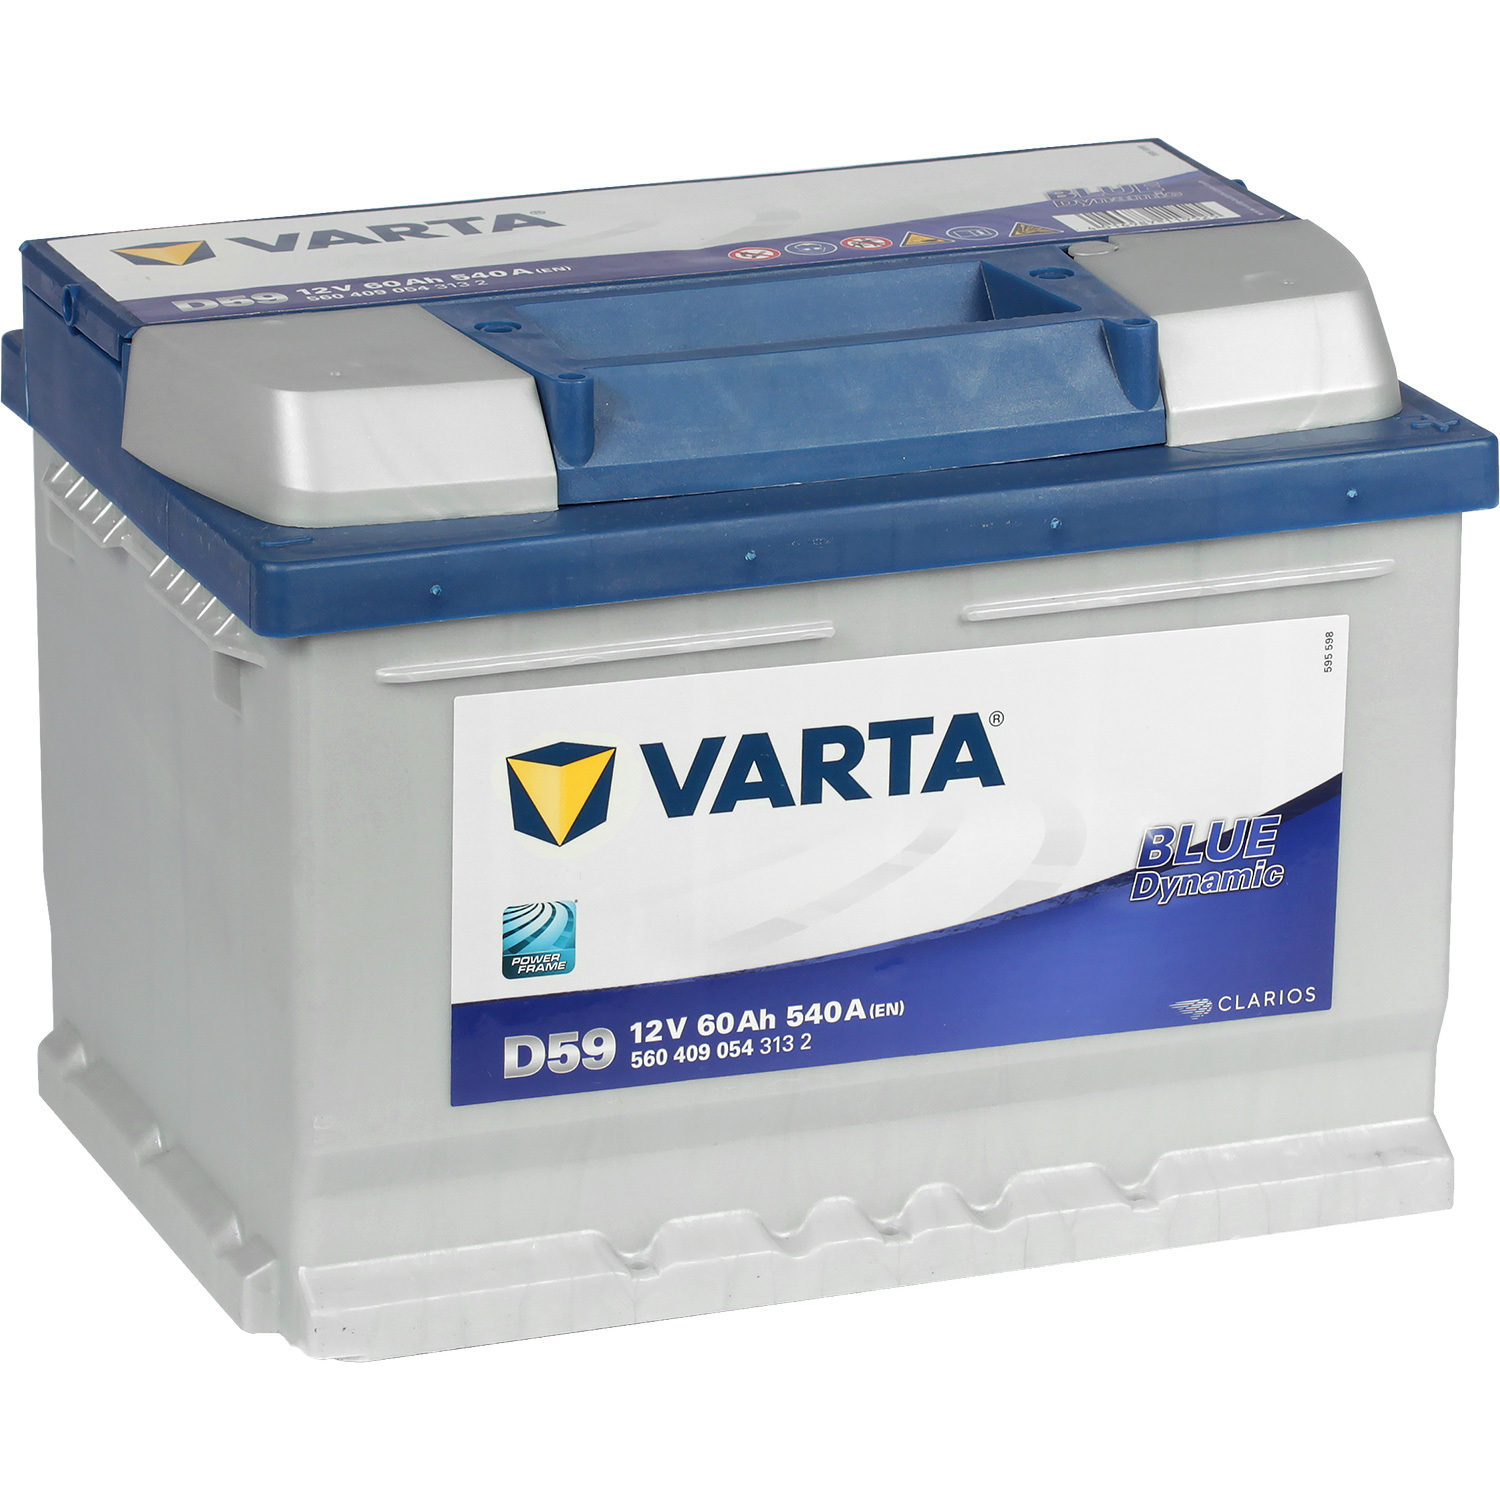 Varta Автомобильный аккумулятор Varta Blue Dynamic D59 60 Ач обратная полярность LB2 аккумулятор для электроинструмента black